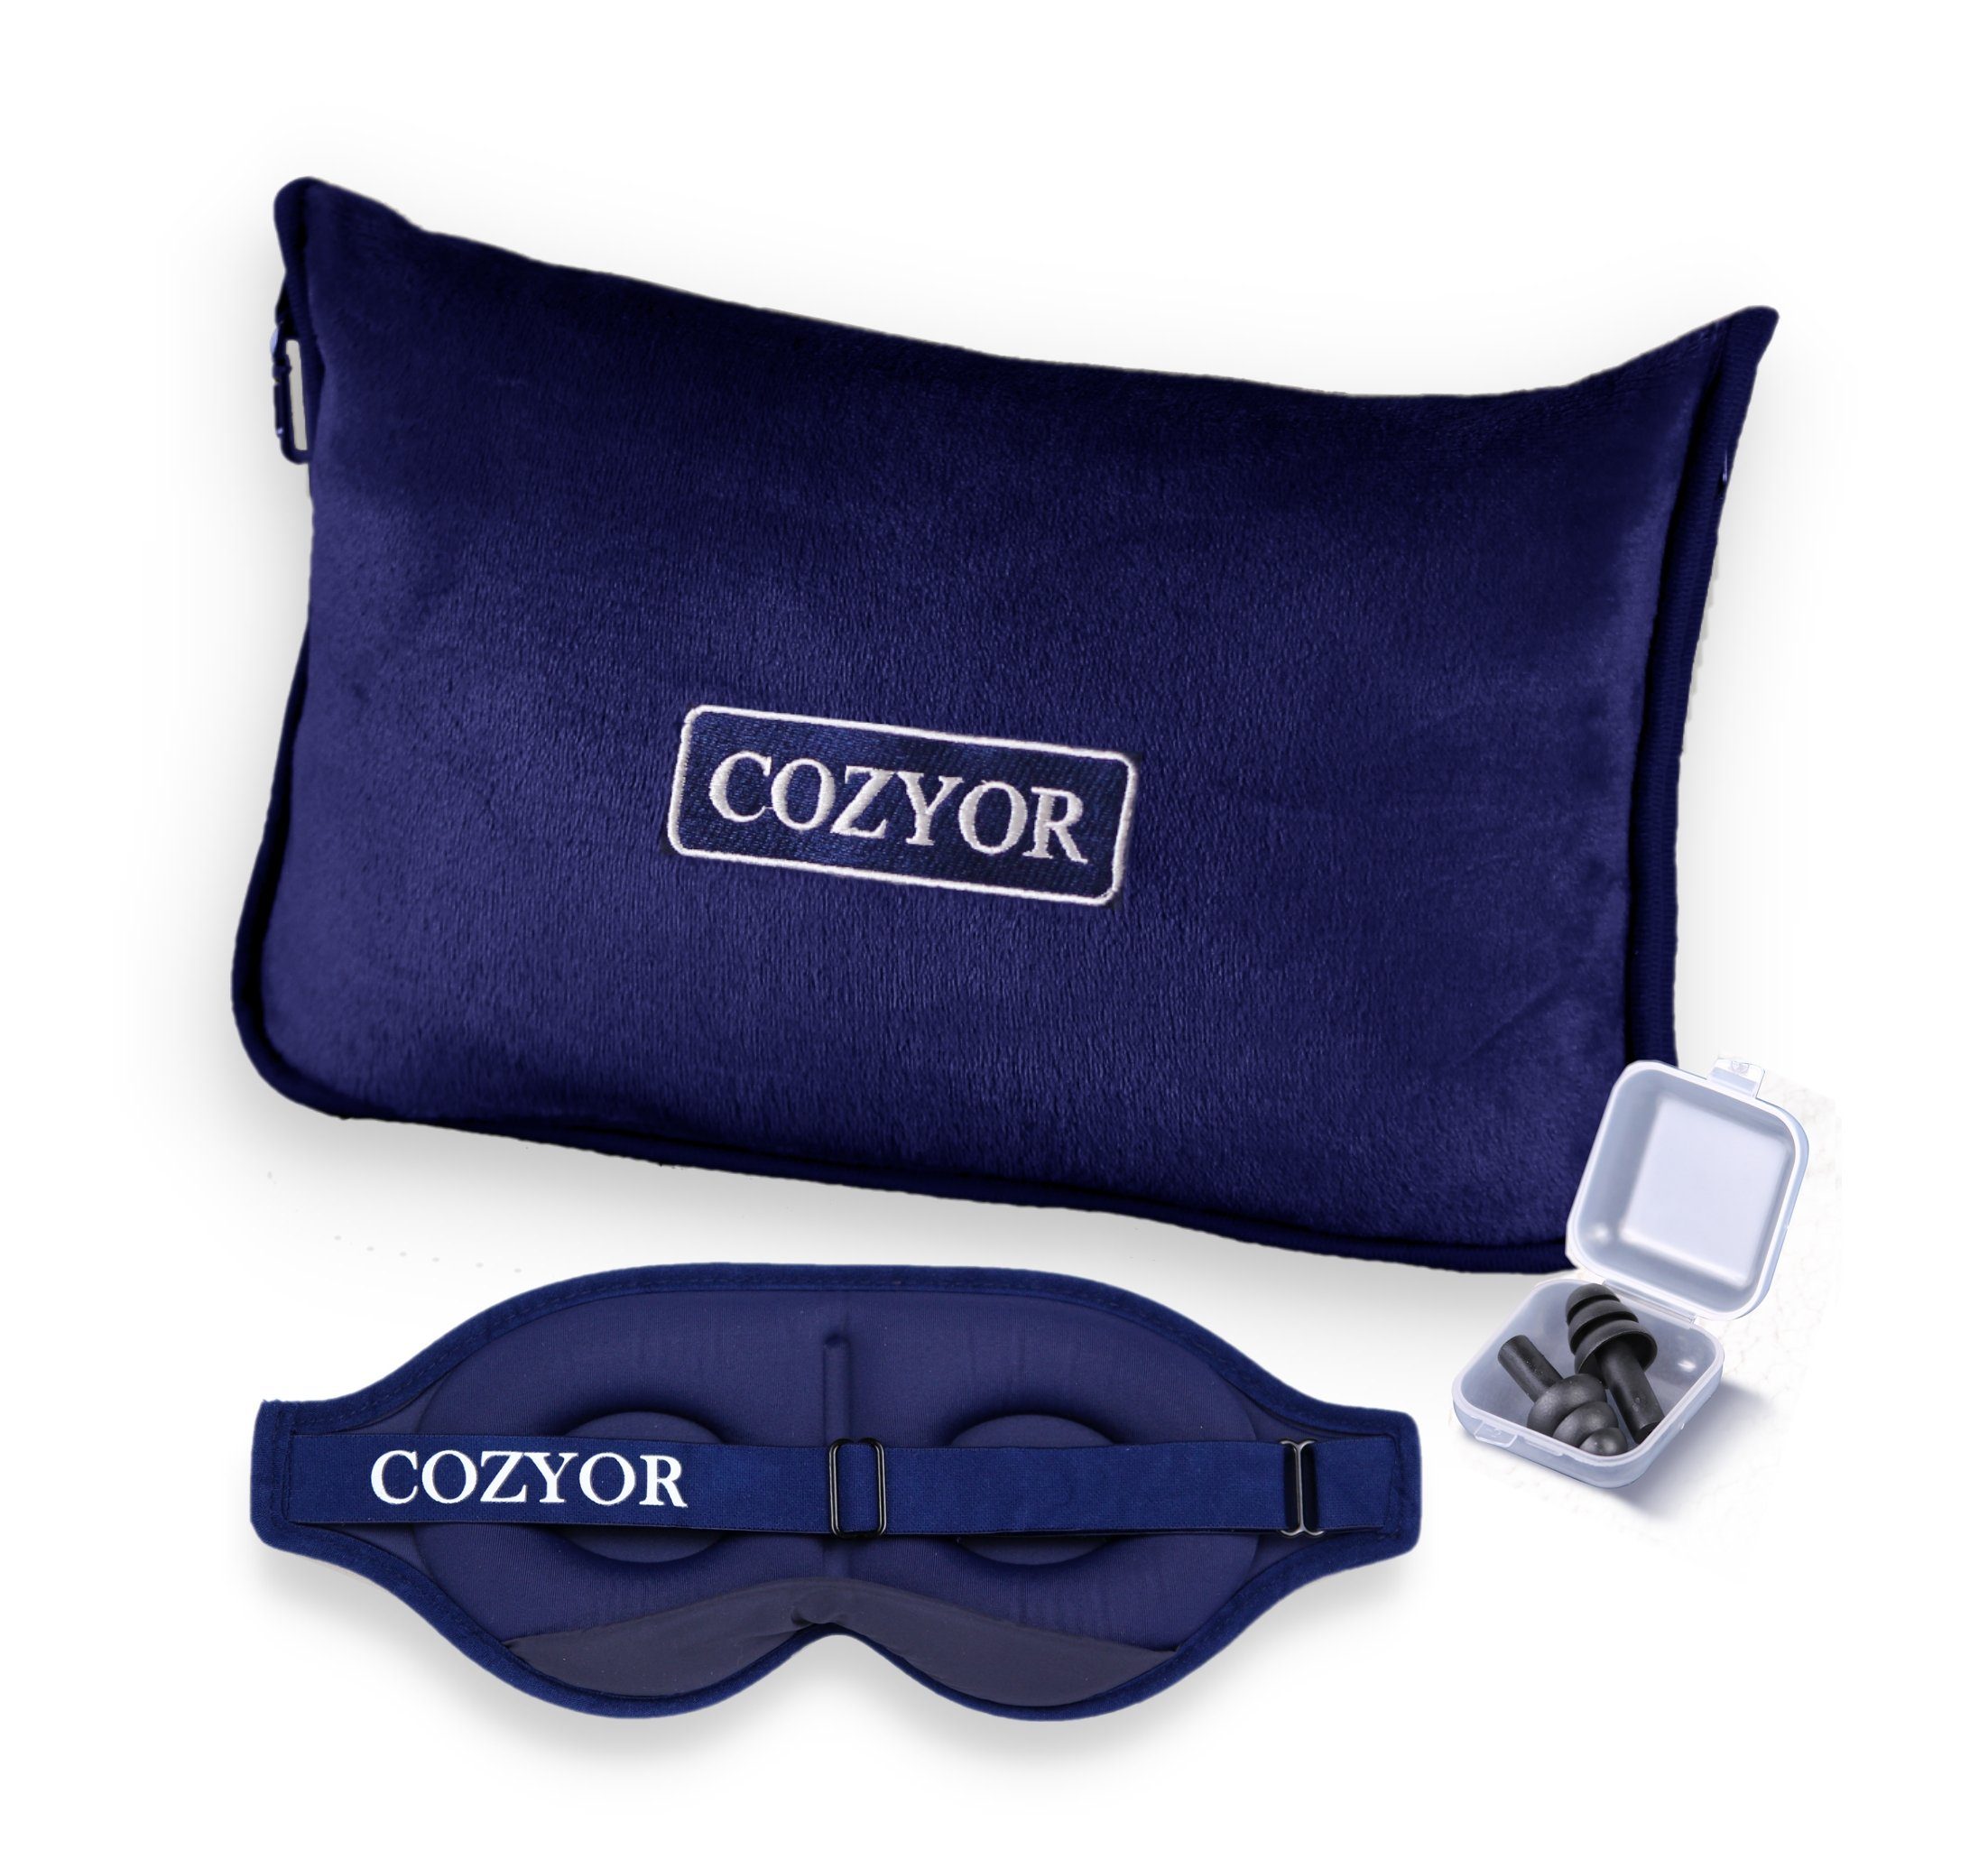 Cozyor Schlafmaske 100% Blackout-Effekt 3D Augenmaske mit ergonomischem Design, Reiseset klein & kompakt, blau Ocean, 2-tlg., extra Polsterung und variable Passform